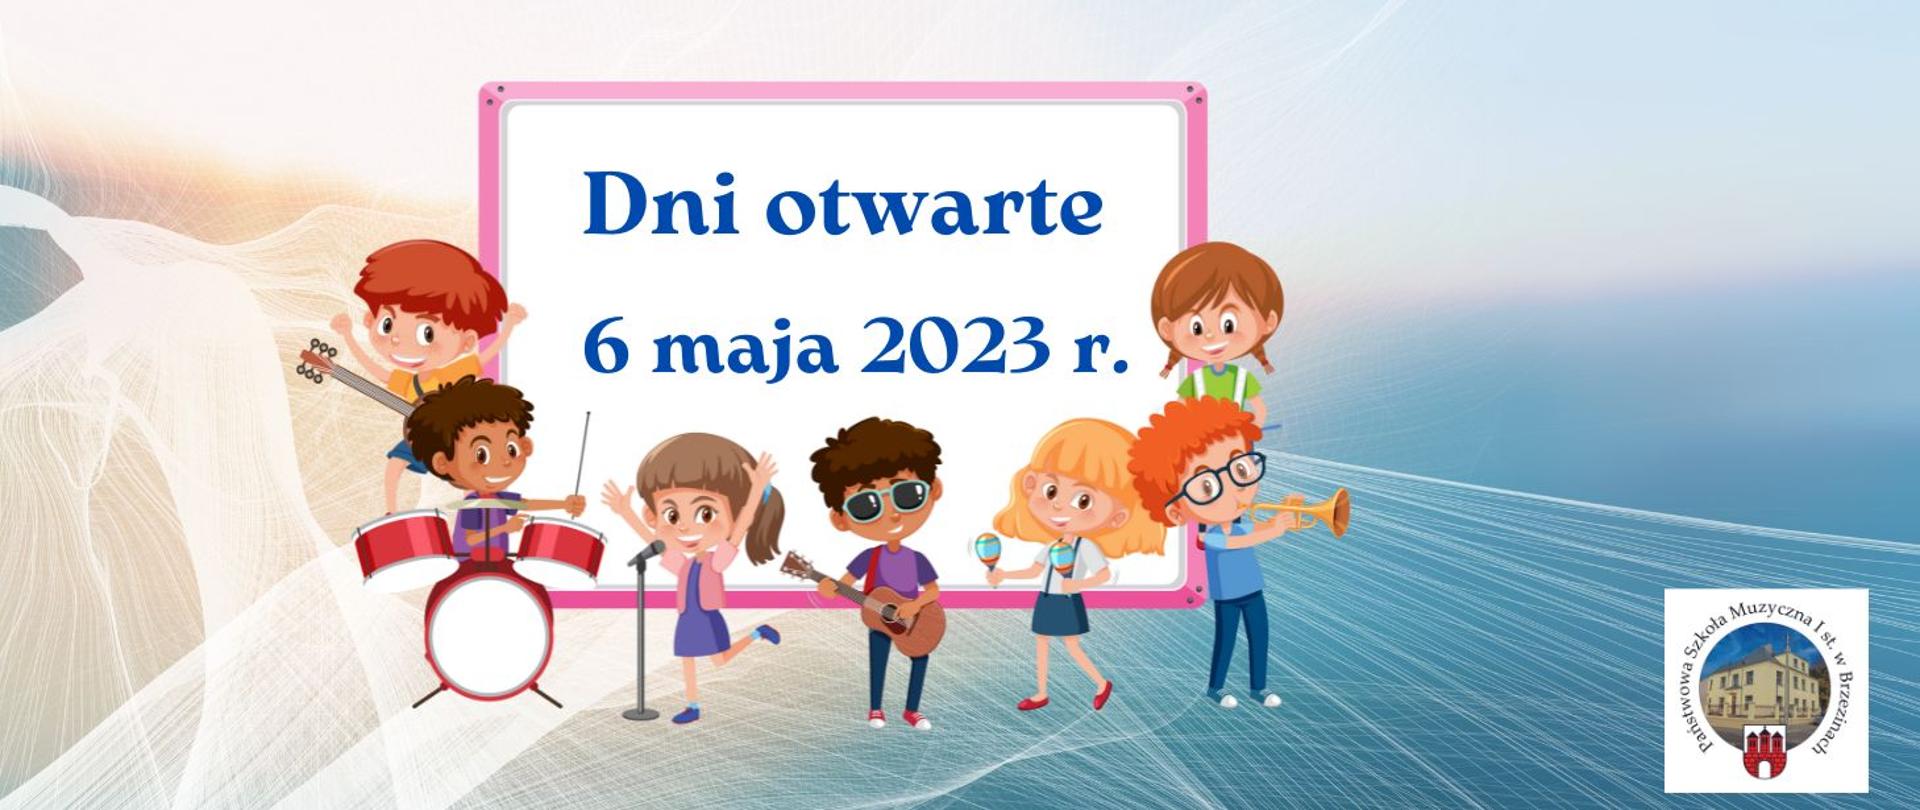 Zdjęcie przedstawia na kolorowym tle dzieci z instrumentami oraz napis "Dni otwarte". W prawym dolnym rogu logo szkoły.